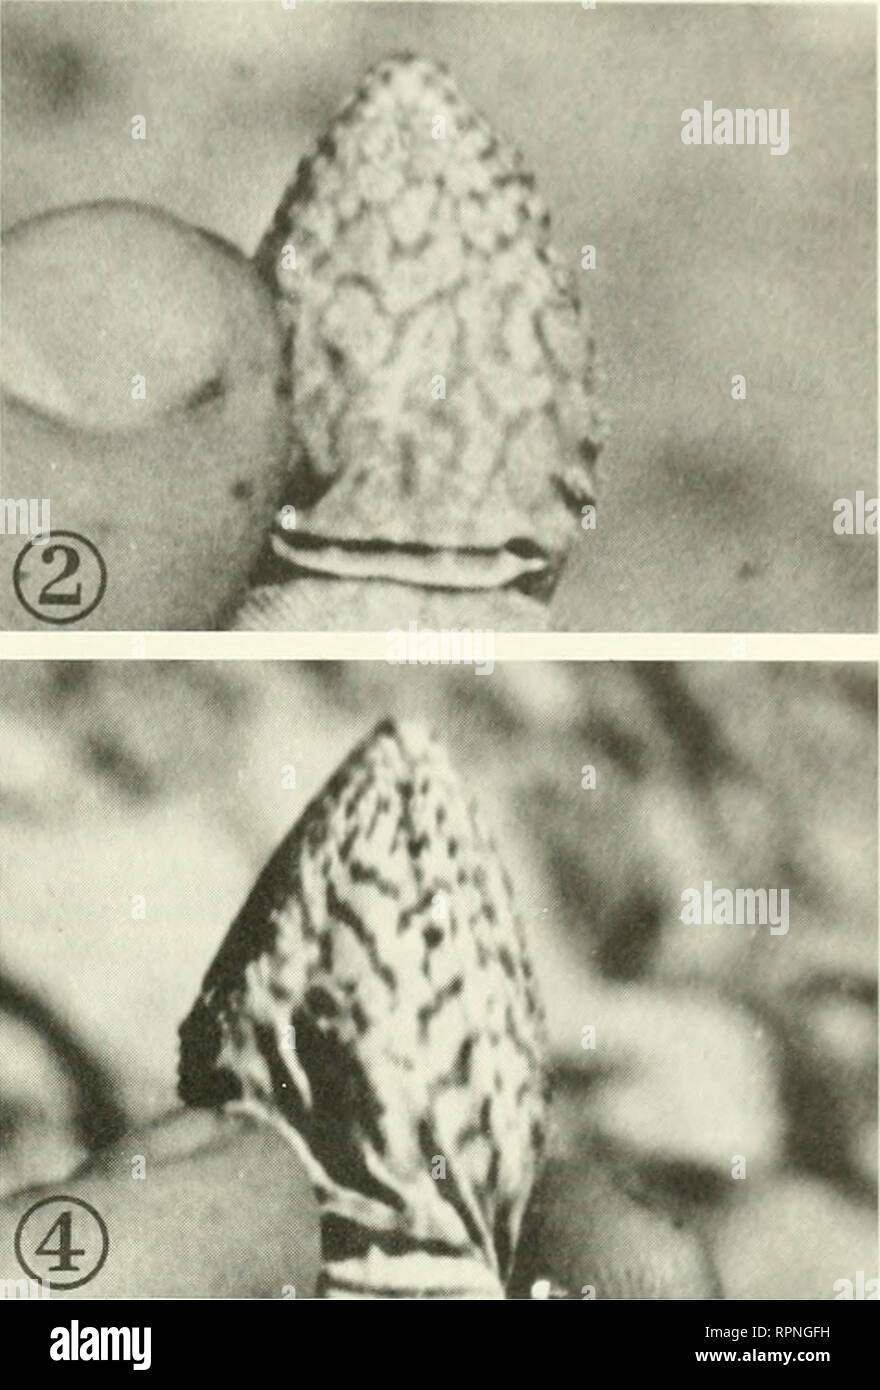 . Ecologia altitudinale della AGAMA SA tuberculata grigio in Himalaya occidentale. Agama sa; tuberculata tuberculata AGAMA SA; lucertole; altitudine, influenza del. 1 Ww ' © Jaijfc3^? AL.:., ^ mi Fig. 4. Fotografie di riconquistare A. tuhercidata mostrando costanza di golare e marcature del torace. L 2. Hatchhng catturato 29 novembre 1973 (SVL=48 mm) e riconquistò 29 maggio 1974 (SVL=65 mm); 3. 4. Novellame catturato il 19 settembre 1973 (SVL=74 mm) e riconquistò il 30 maggio 1974 (SVL=93 mm): 5. 6. Maschio adulto catturato il 23 aprile 1973 (SVL=115 mm) e riconquistò il 4 giugno 1974 (SVL=127 mm). base della sua marcature (Fig. 4). Identificazione wa Foto Stock